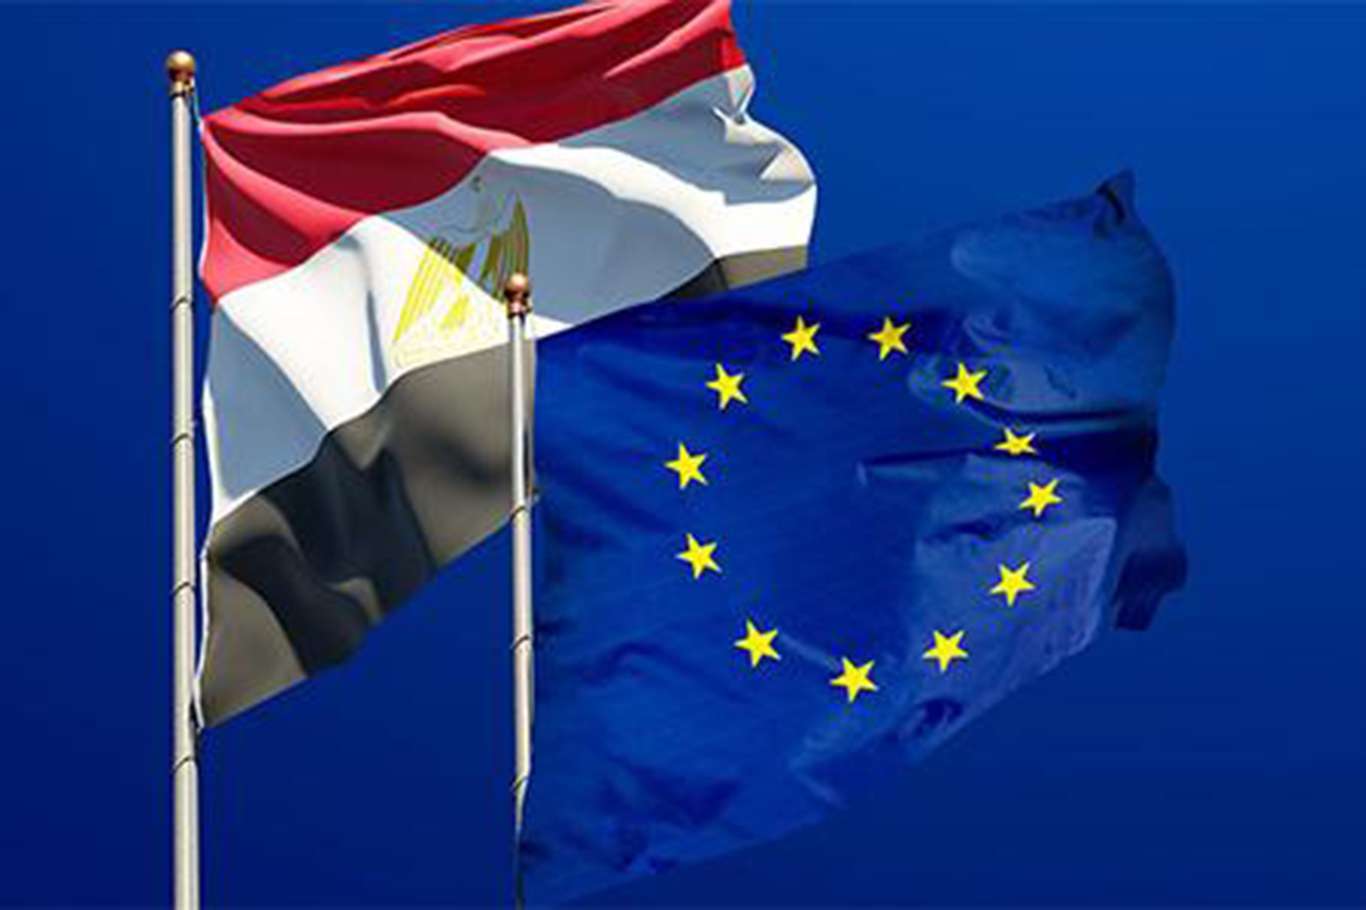  الاتحاد الأوروبي يخطط لدعم مصر بـ 10 مليارات دولار